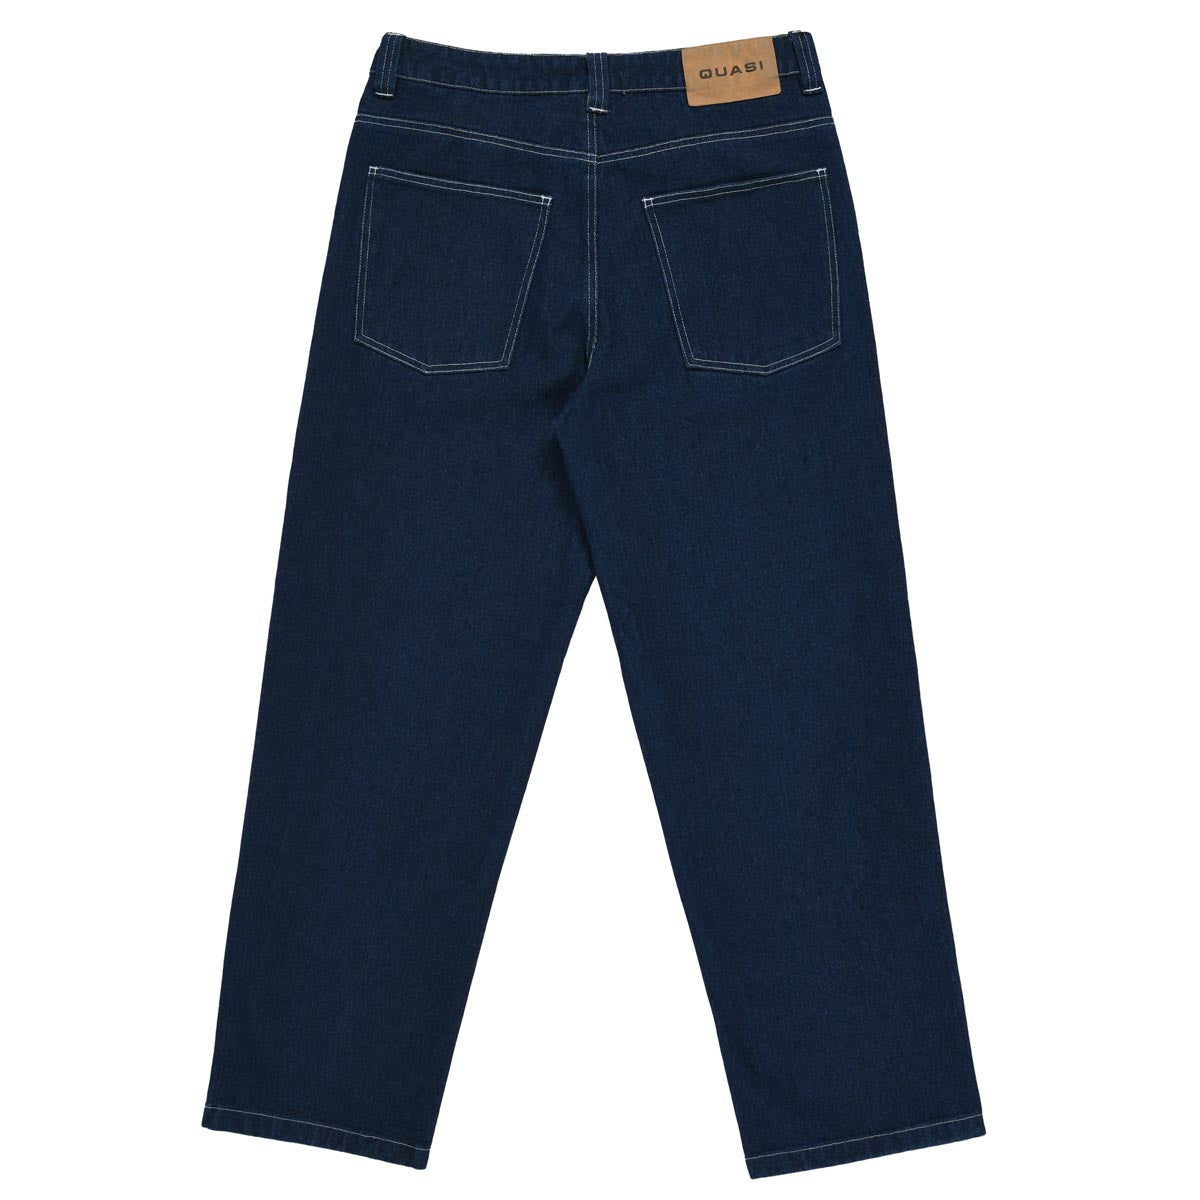 Quasi 102 Jeans - Dark Indigo image 4